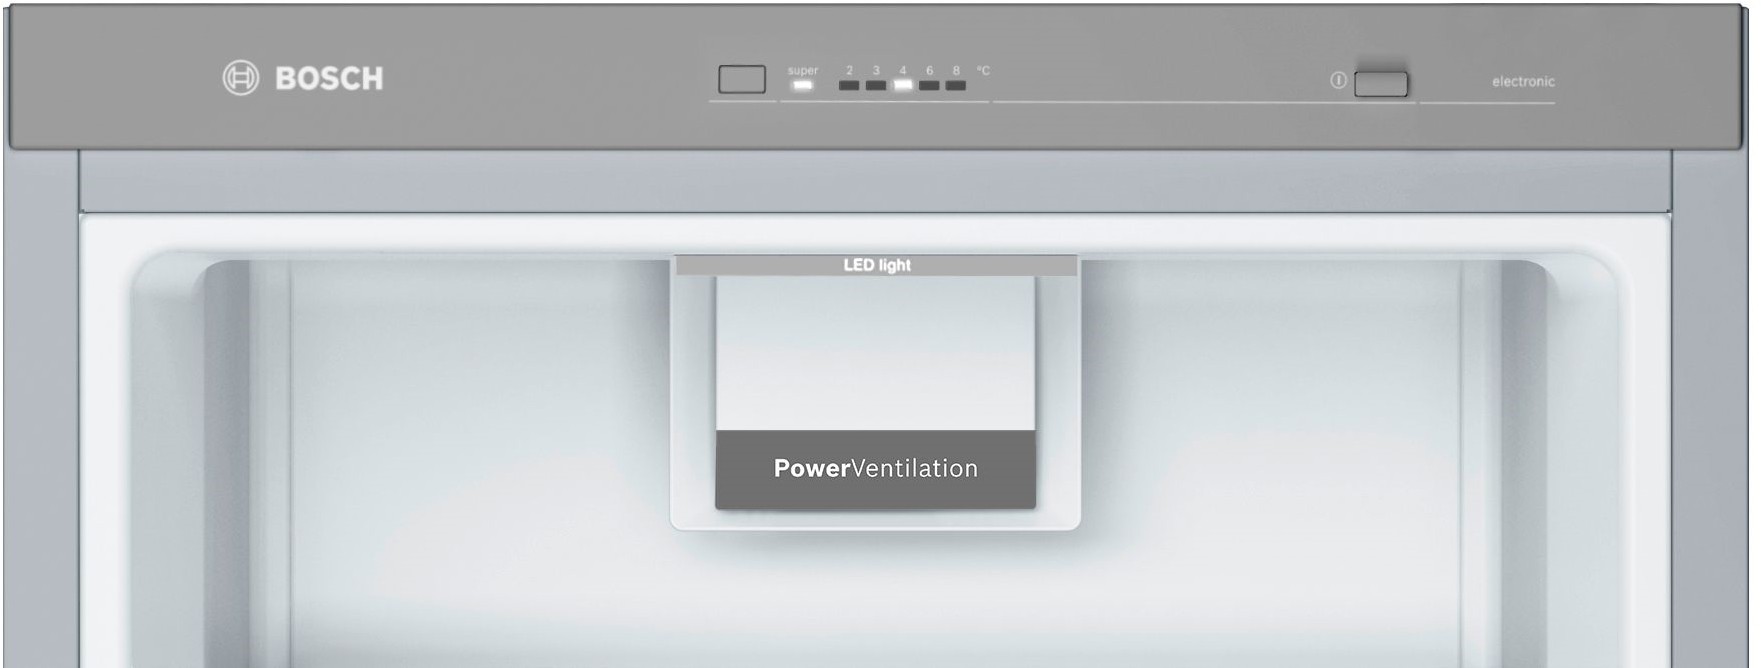 BOSCH Réfrigérateur 1 porte Série 4 VitaFresh 290L Inox - KSV29VLEP